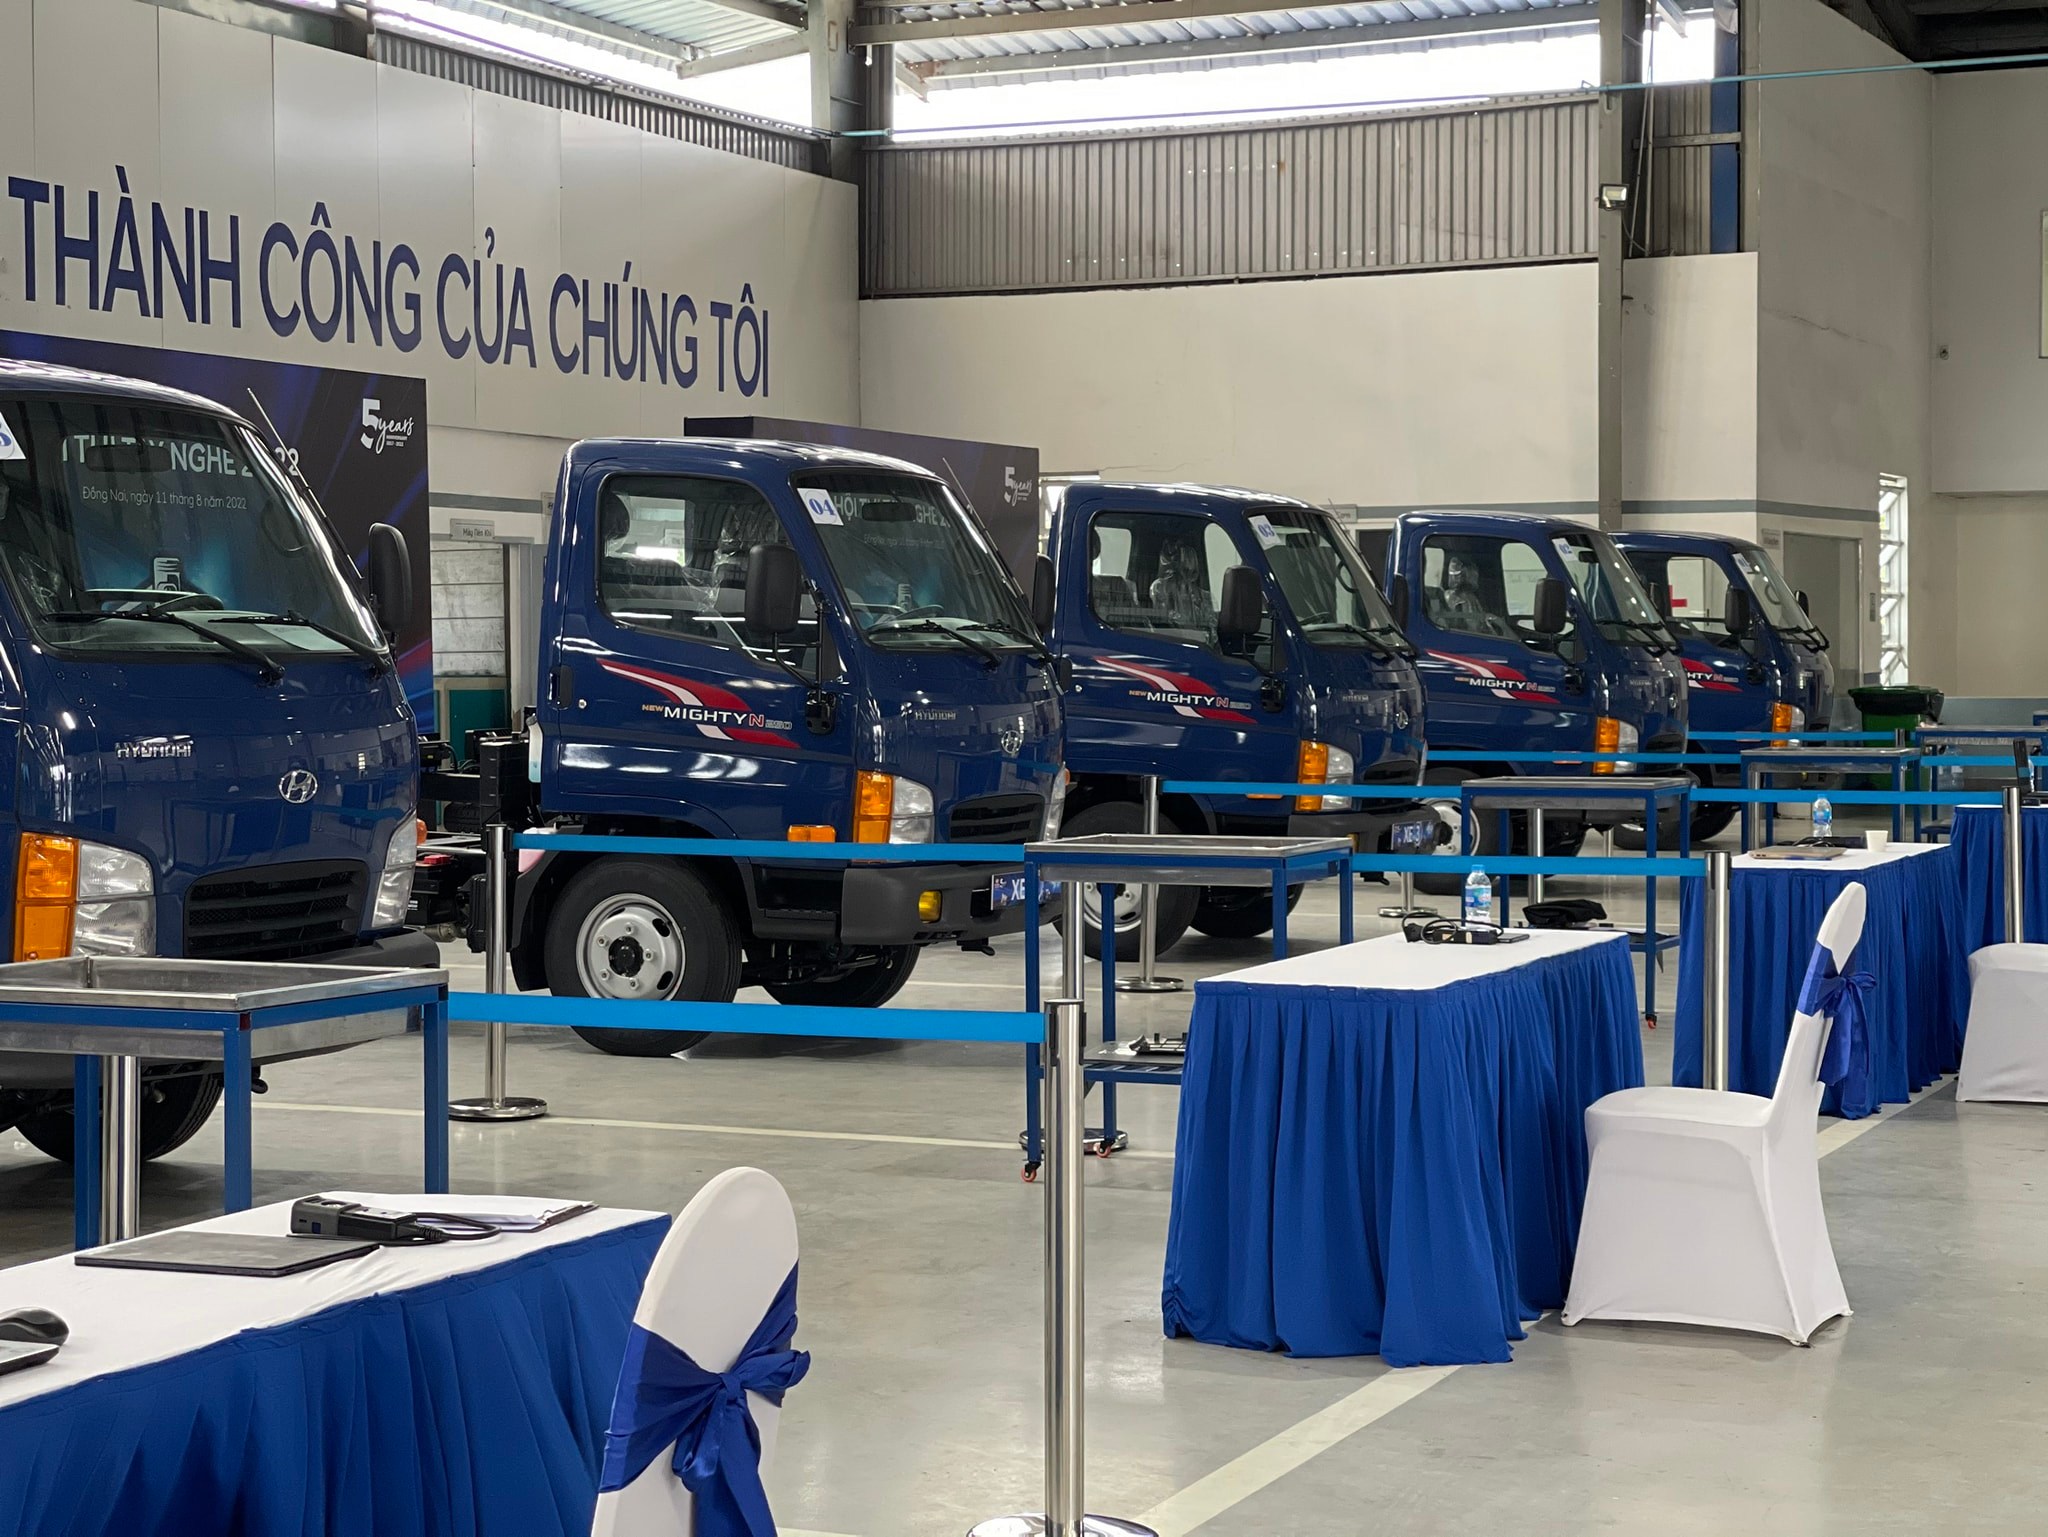 Hyundai Phố Hiến tham dự Hội thi tay nghề 2022 tại Đồng Nai do HTCV tổ chức